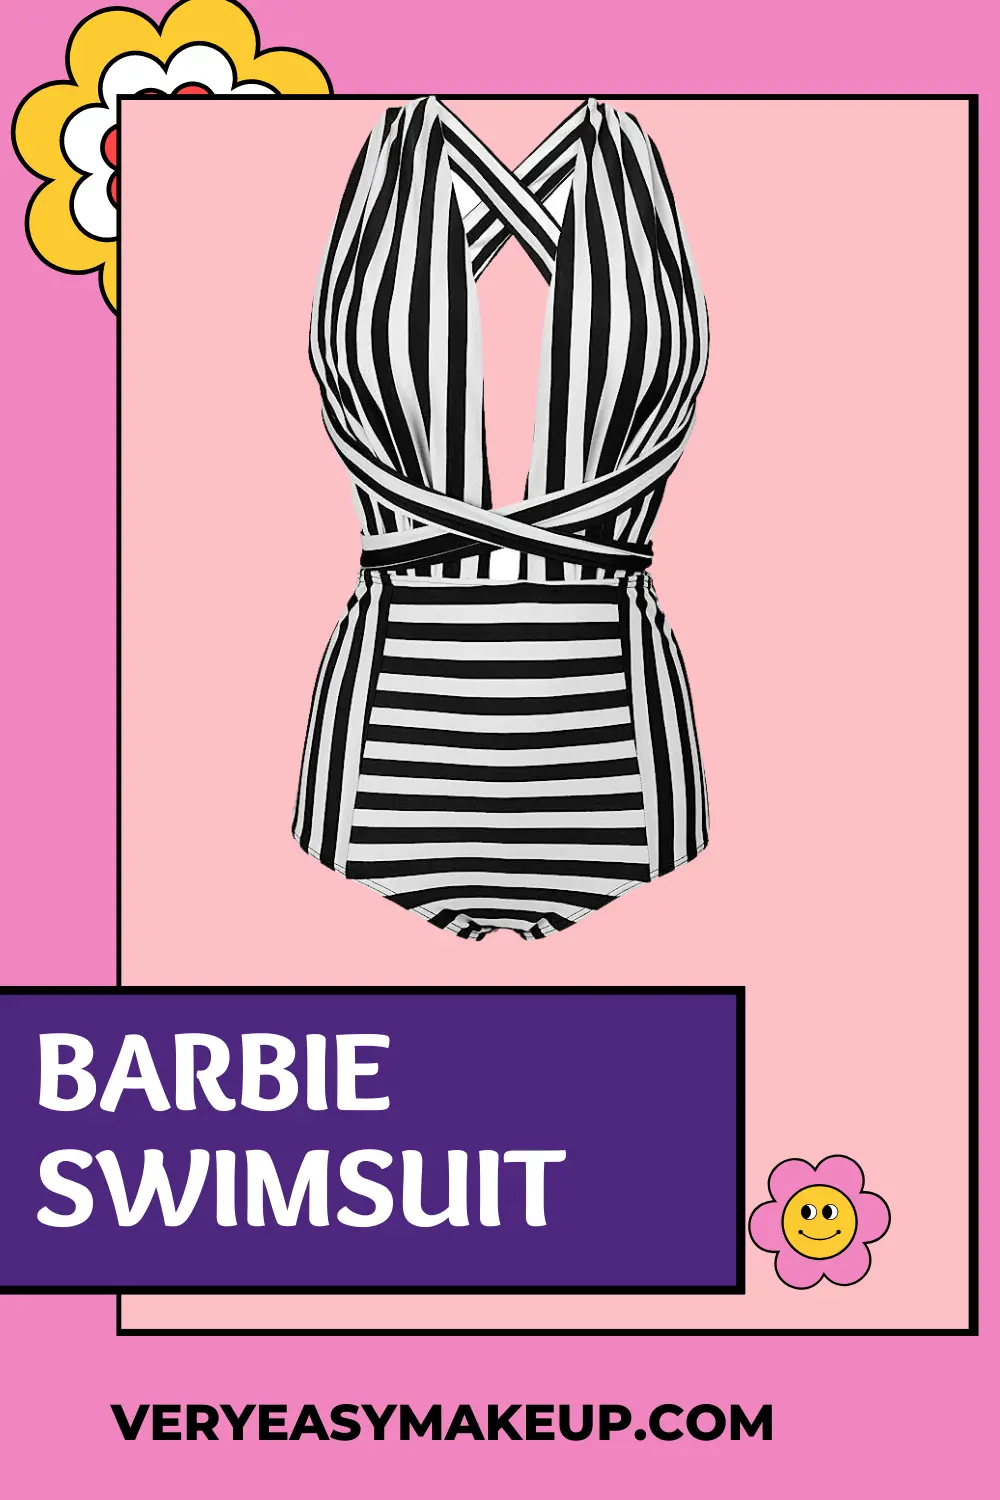 Barbie retro swimsuit